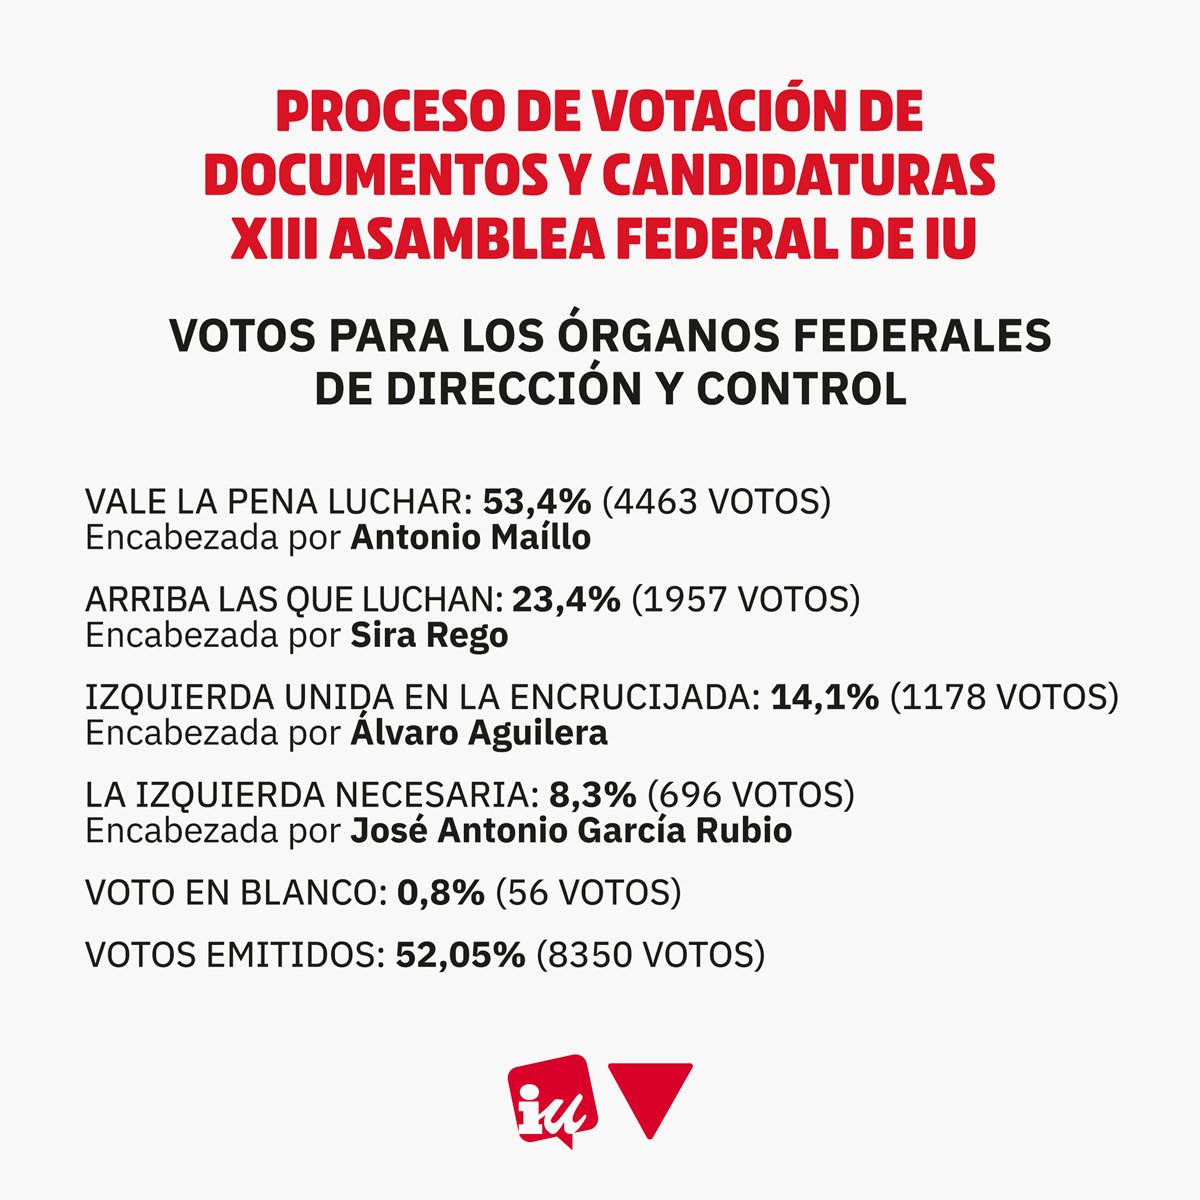 ‼️ Resultados #XIIIAsambleaIU: 🔴 La candidatura encabezada por @MailloAntonio gana la votación a la coordinación con el 53,4% de los votos. 🔴 Candidatura @SiraRego: 23,4% 🔴 Candidatura @AlvaroAgFa: 14,1% 🔴 Candidatura @JAGarciaRubio: 8,3%